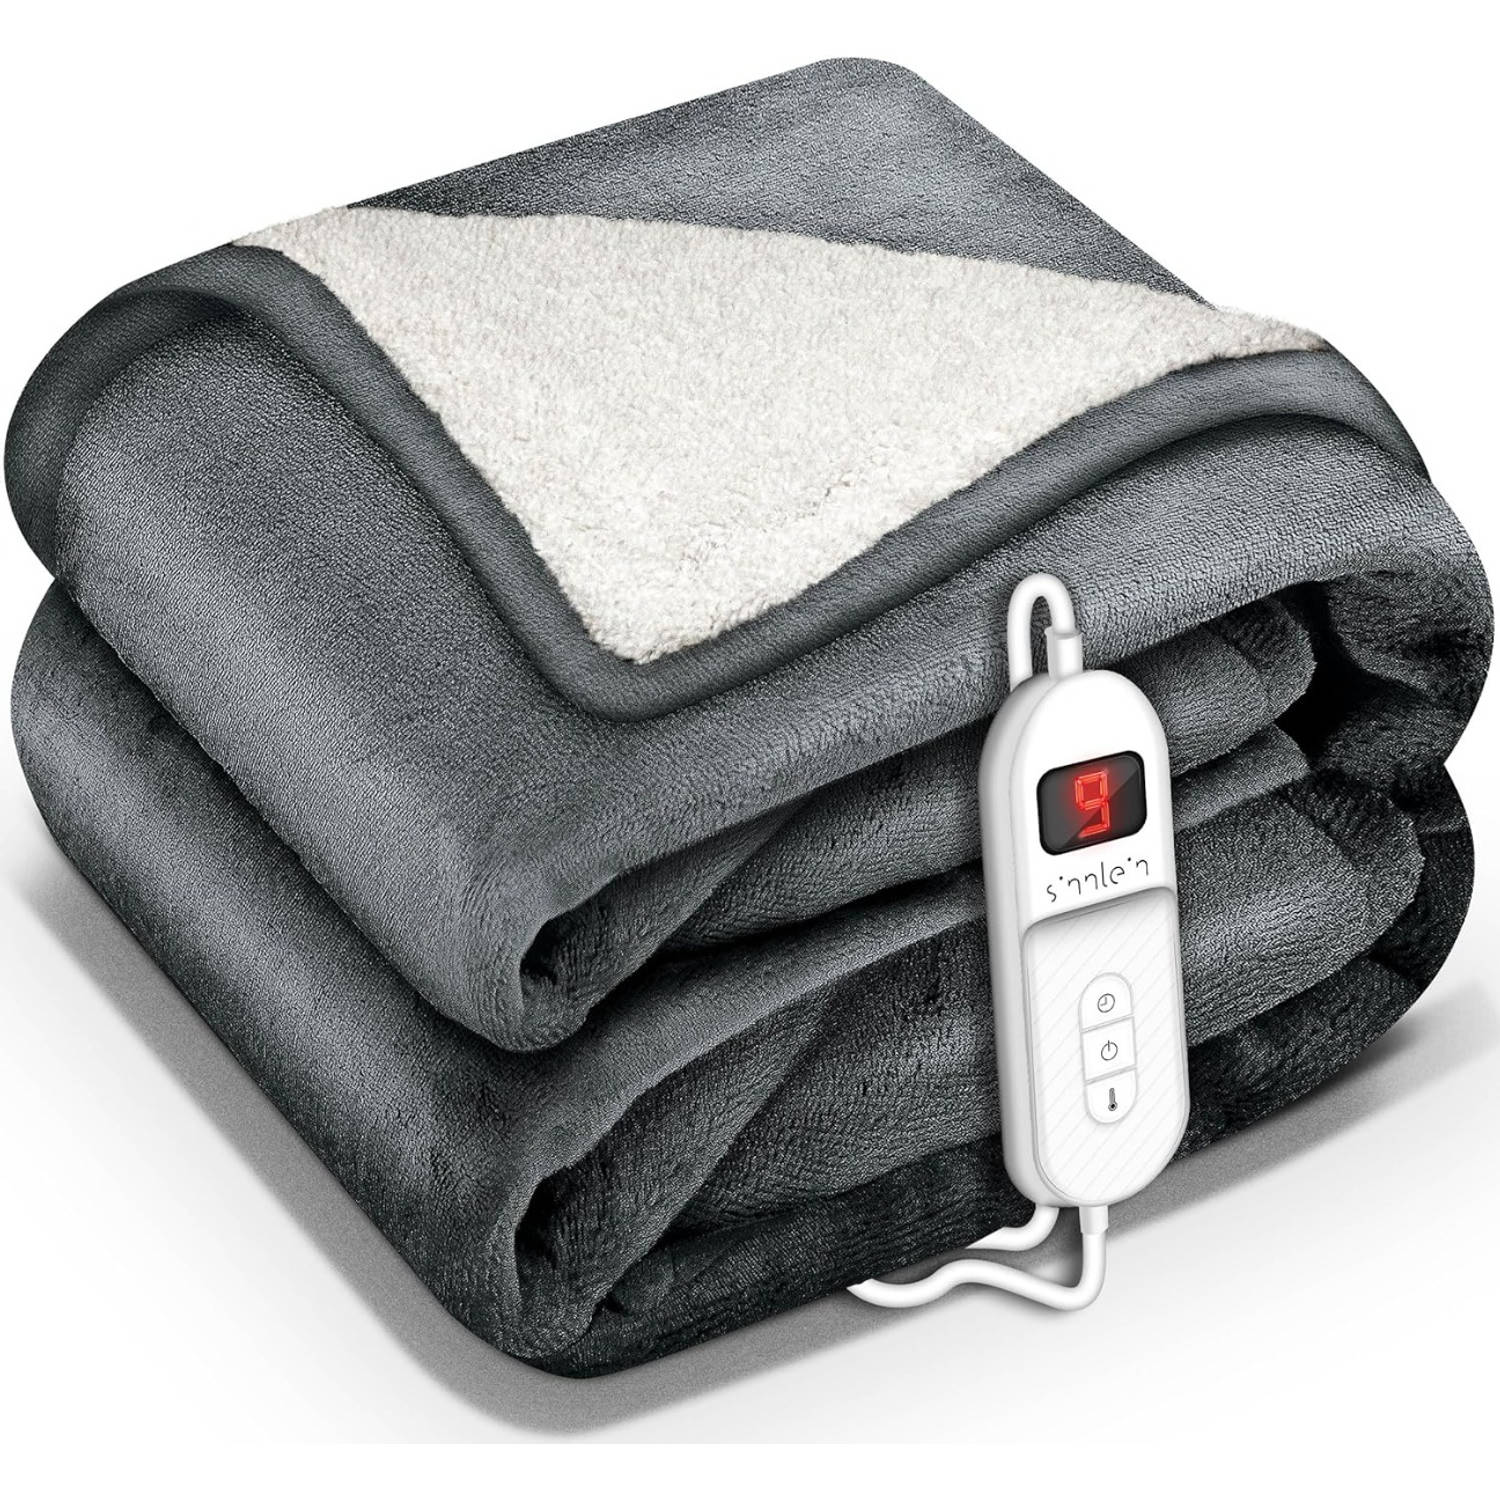 Sinnlein- Elektrische deken met automatische uitschakeling, donkergrijs, 160x120 cm, warmtedeken met